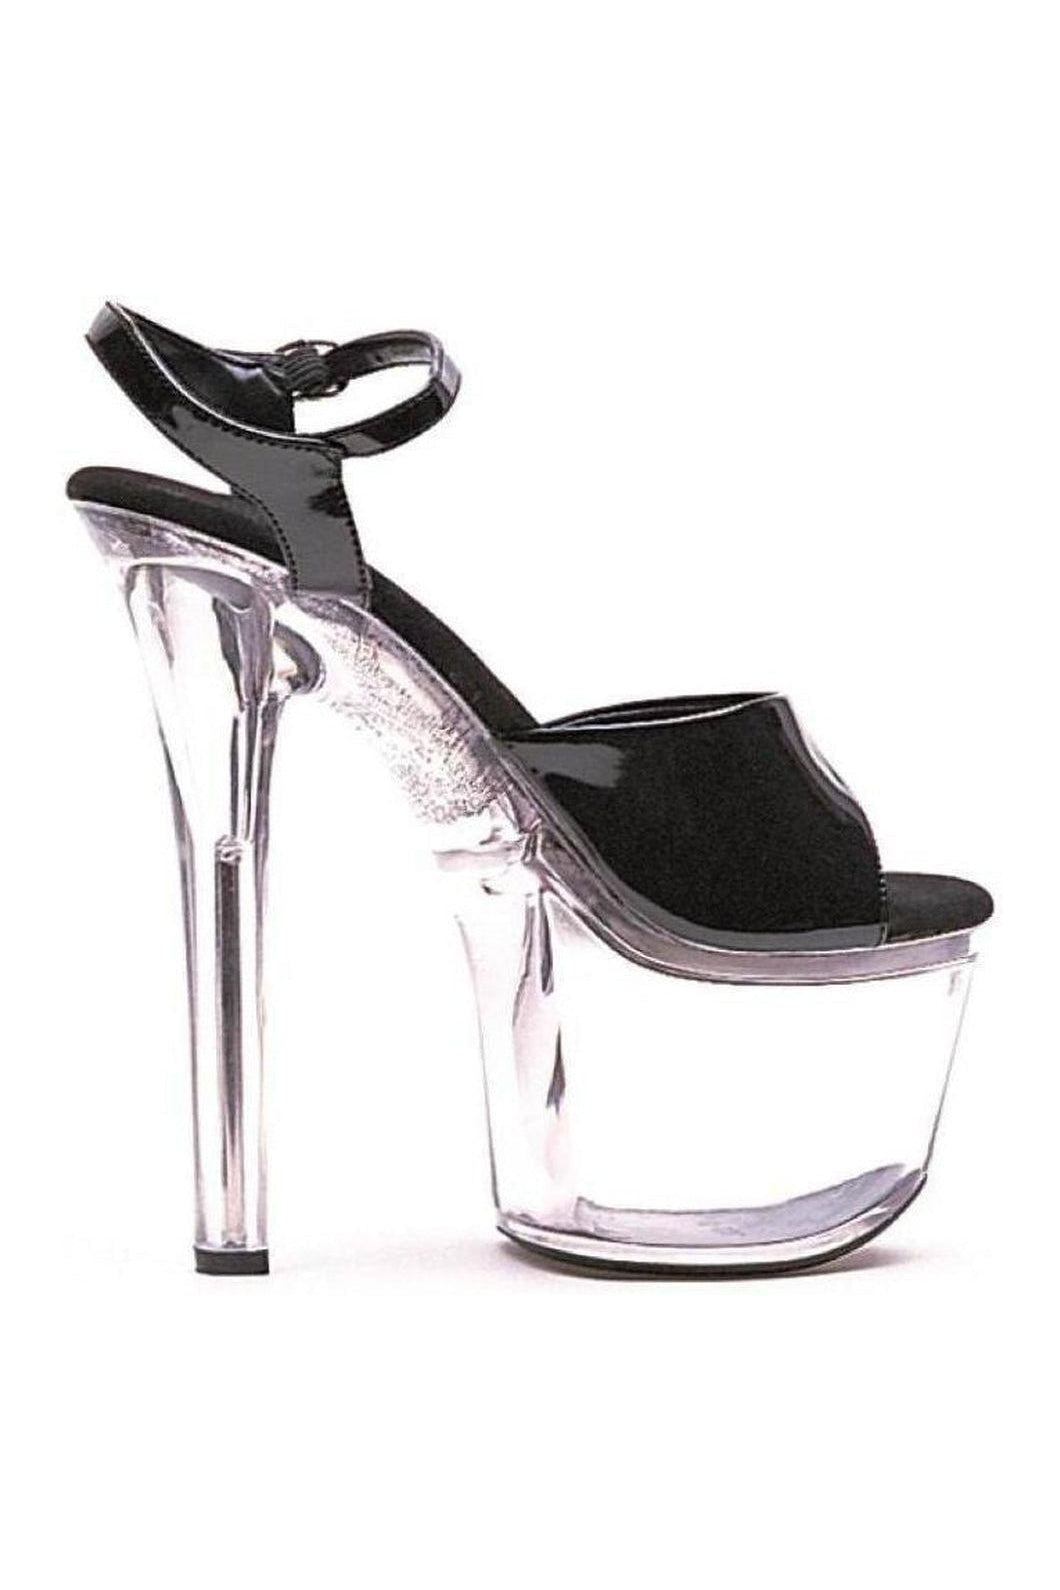 711-FLIRT Stripper Sandal | Black Patent-Ellie Shoes-SEXYSHOES.COM